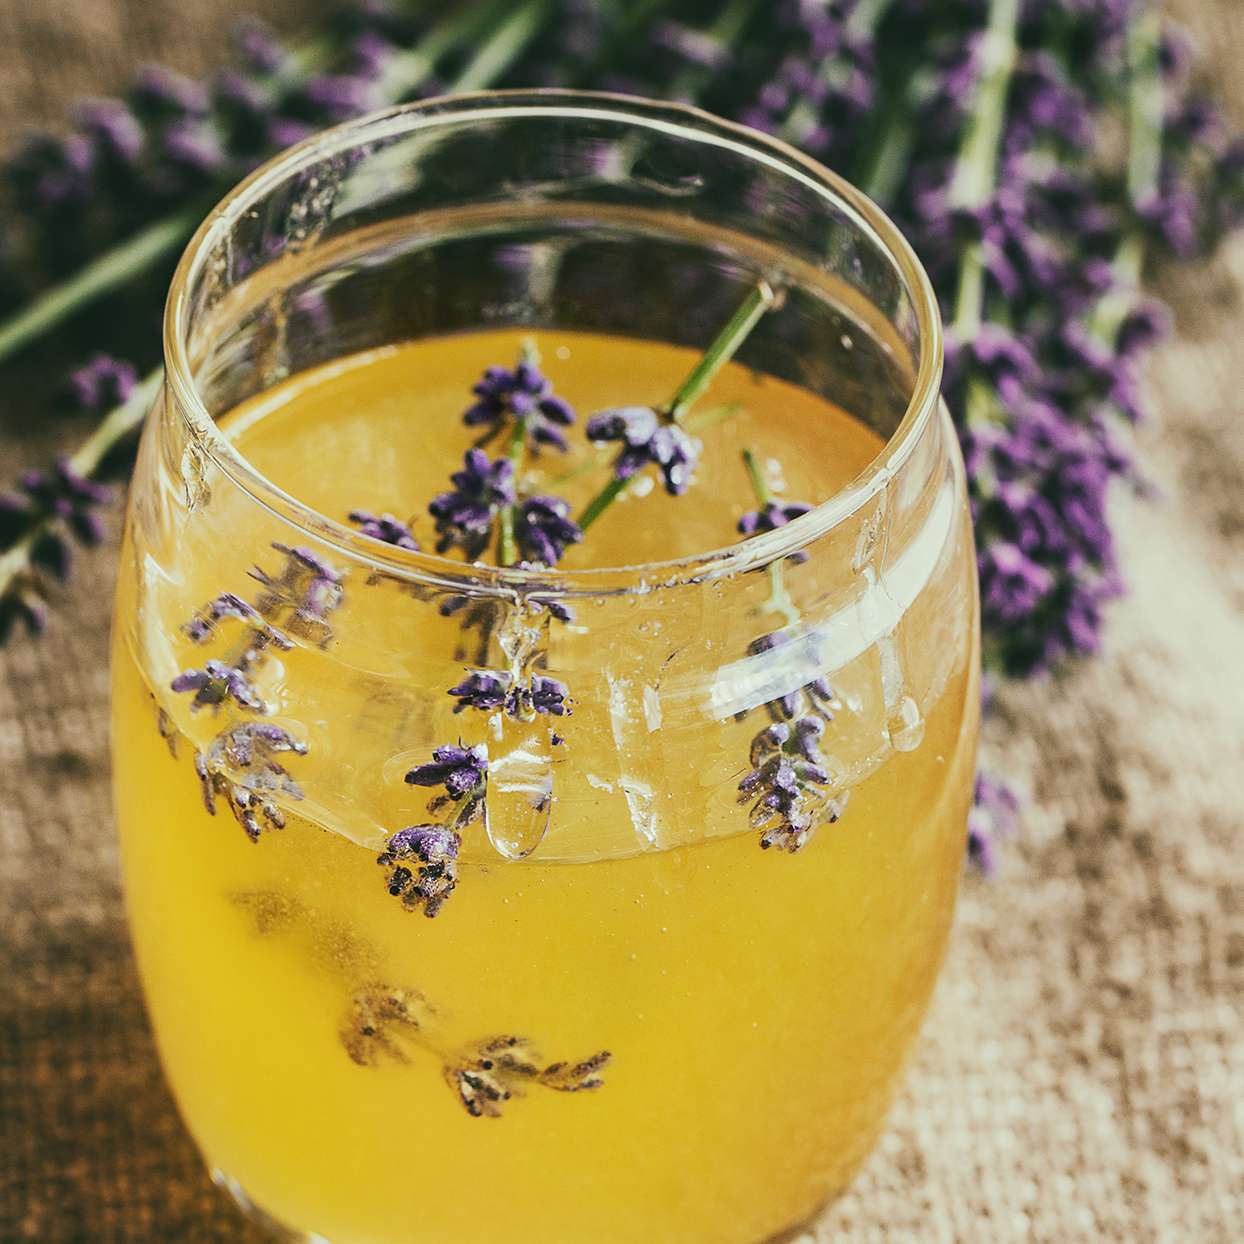 Can Eating Local Honey Help Treat Seasonal Allergies?